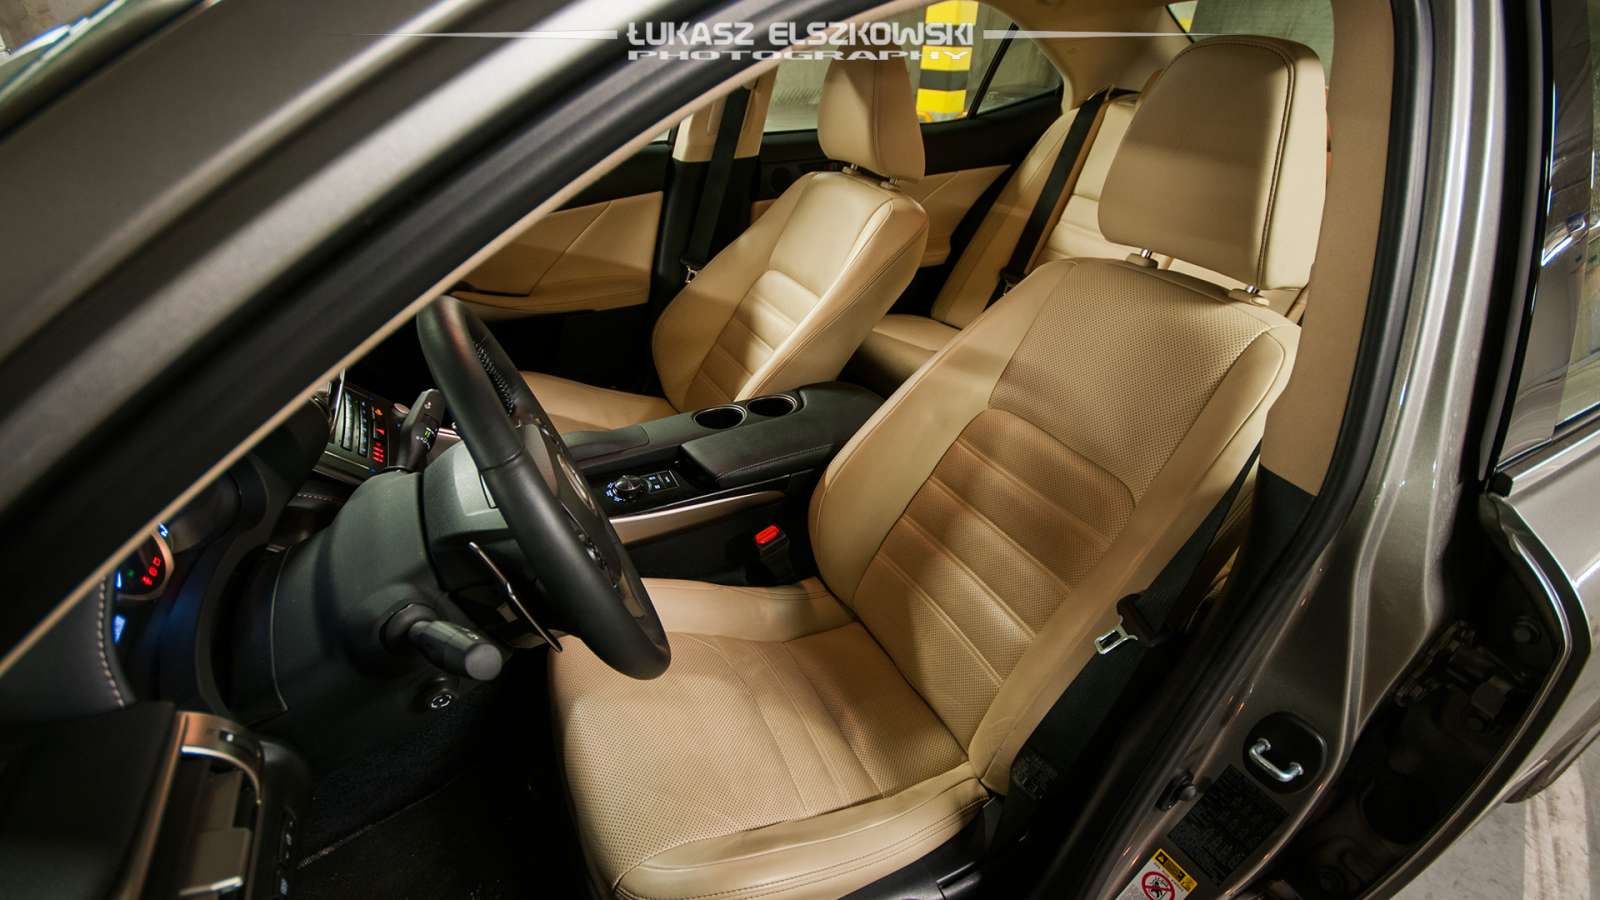 Lexus IS300h interior